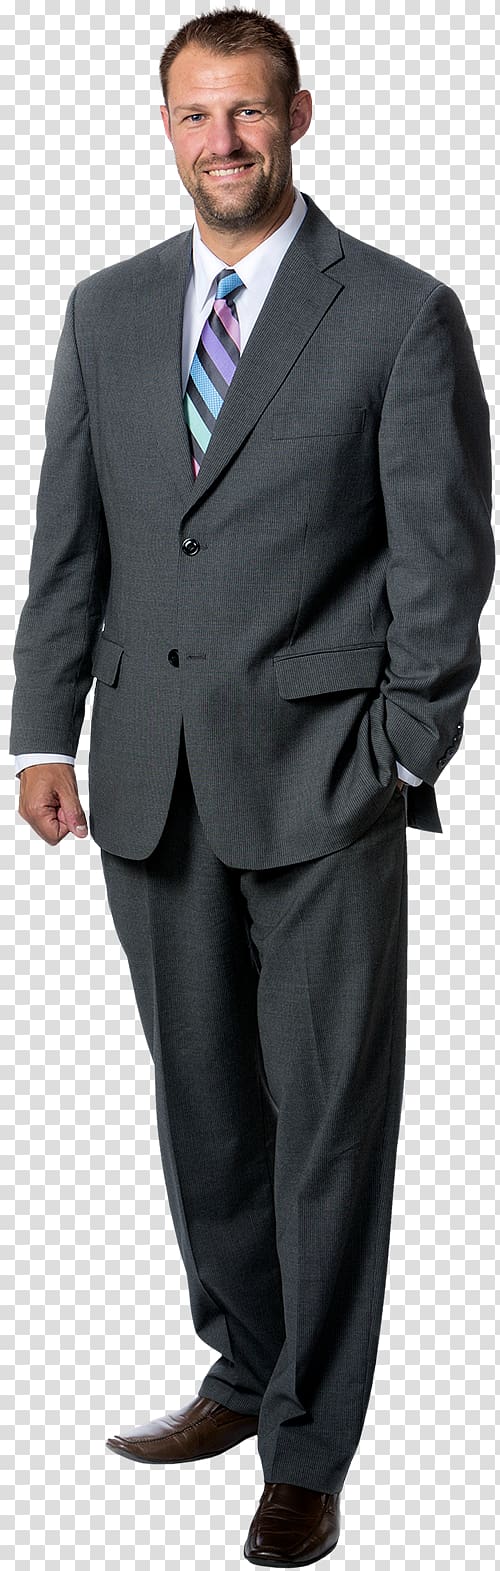 Business JoS. A. Bank Clothiers Pants Tuxedo Suit, lawyers team transparent background PNG clipart